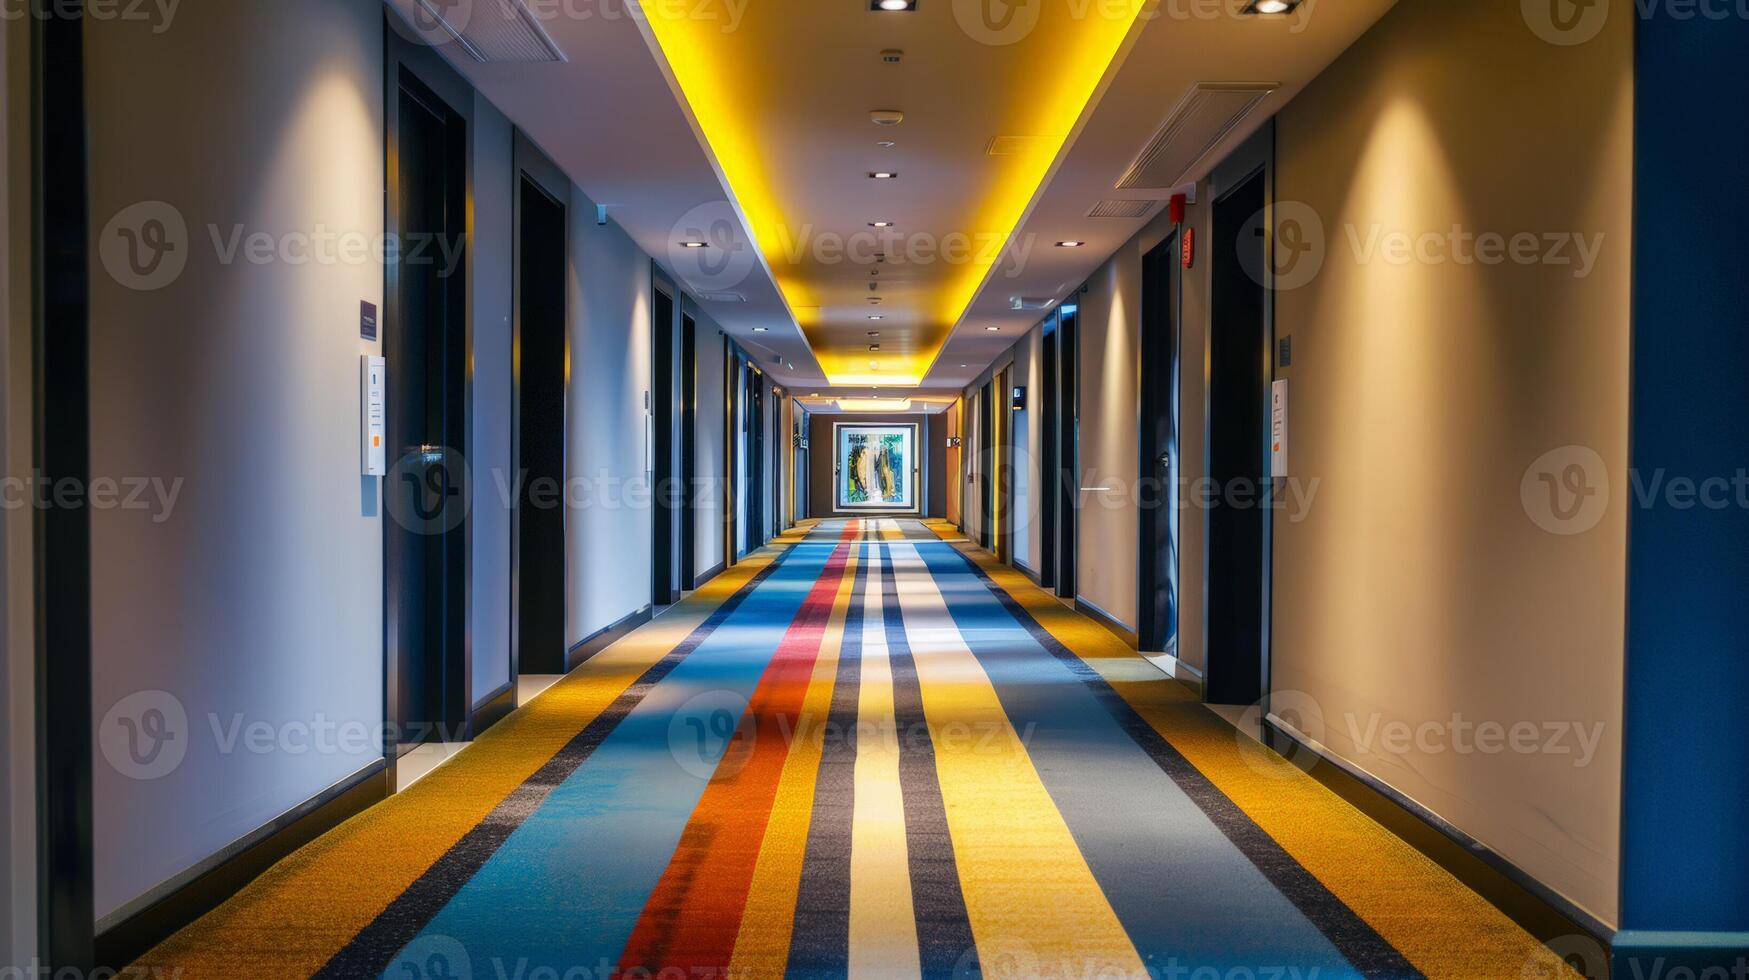 moderno Hotel corridoio con vivace a strisce tappeto e illuminato soffitto, adatto per concetti come come viaggiare, struttura ricettiva, e architettura foto